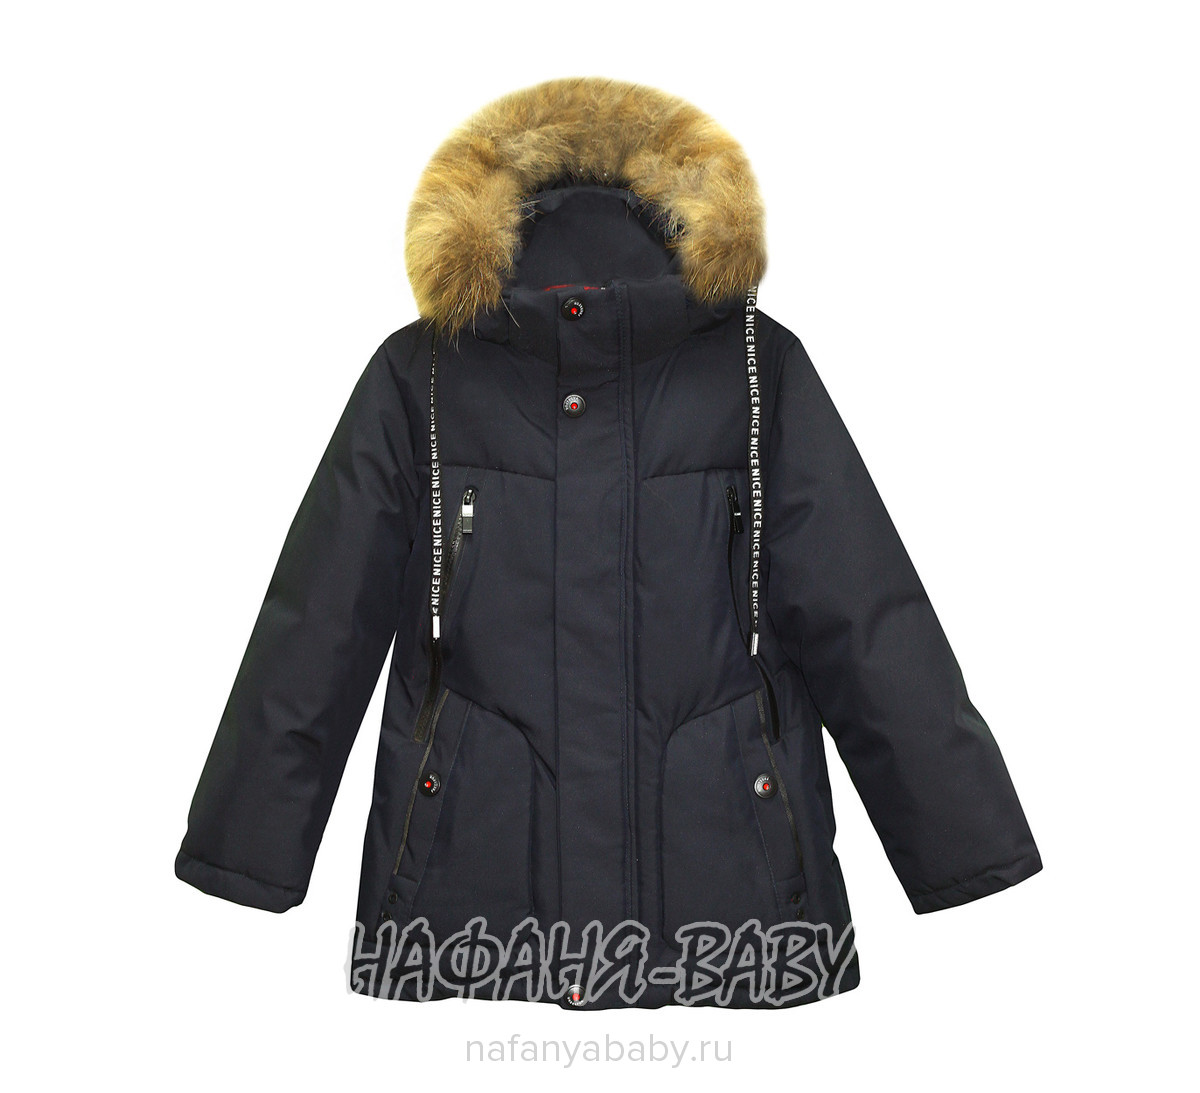 Детская зимняя куртка CX арт: 6227, 5-9 лет, 1-4 года, оптом Китай (Пекин)